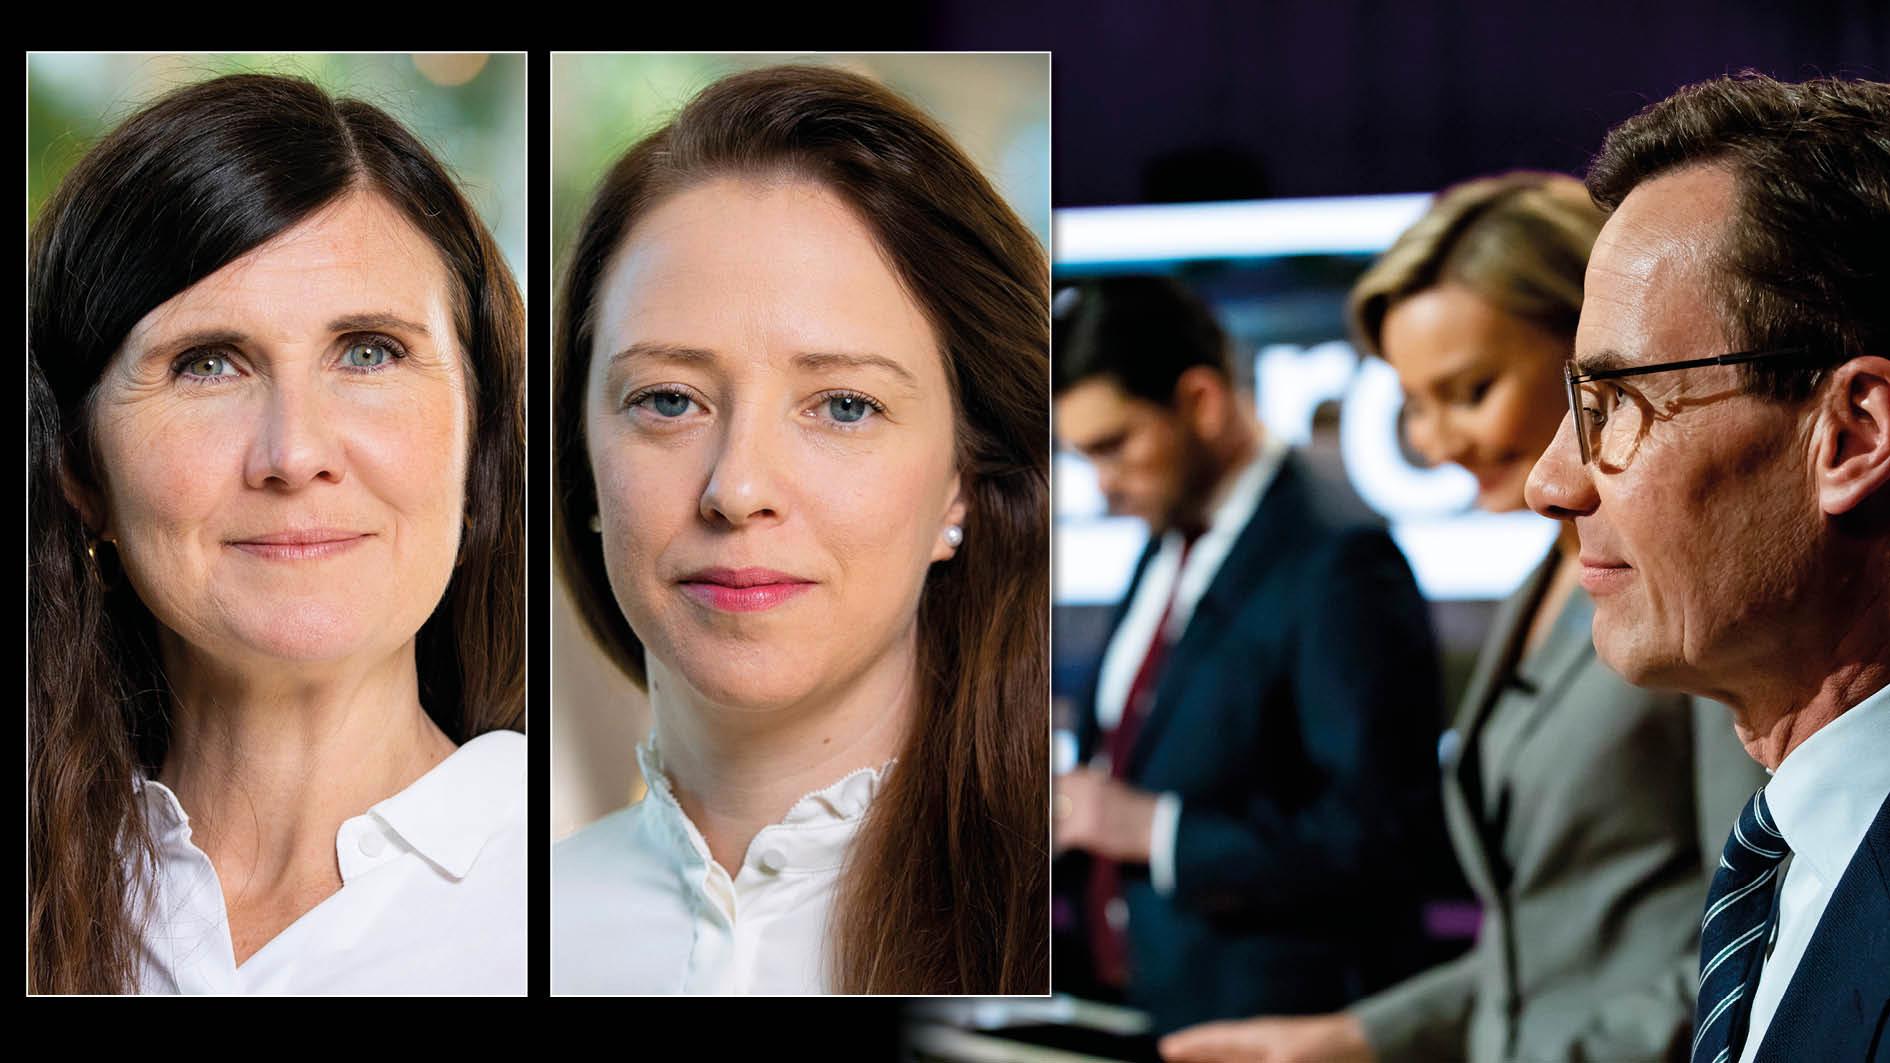 Från MP:s sida kommer vi att hålla ögonen på varje steg den nya regeringen tar och slå vakt om att jämställdheten inte börjar rullas tillbaka, skriver Märta Stenevi och Åsa Lindhagen.